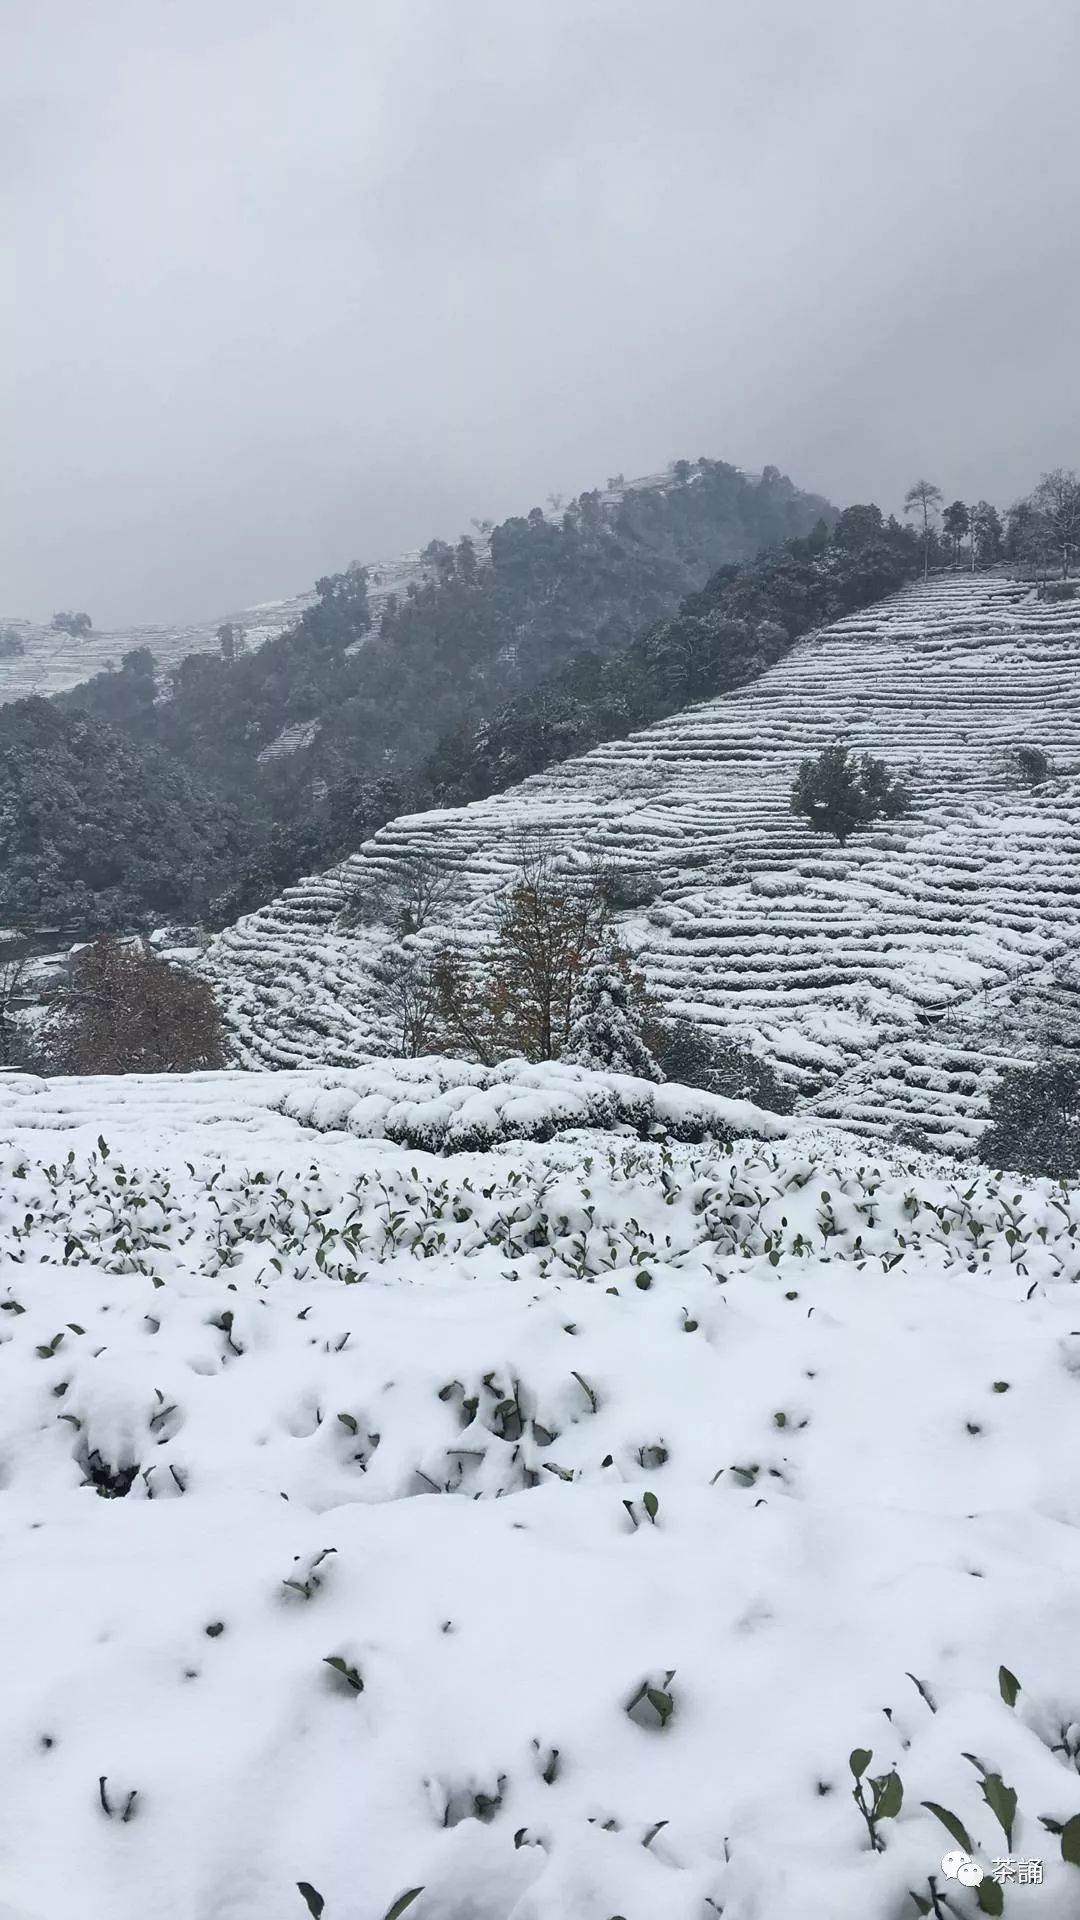 龙井初雪